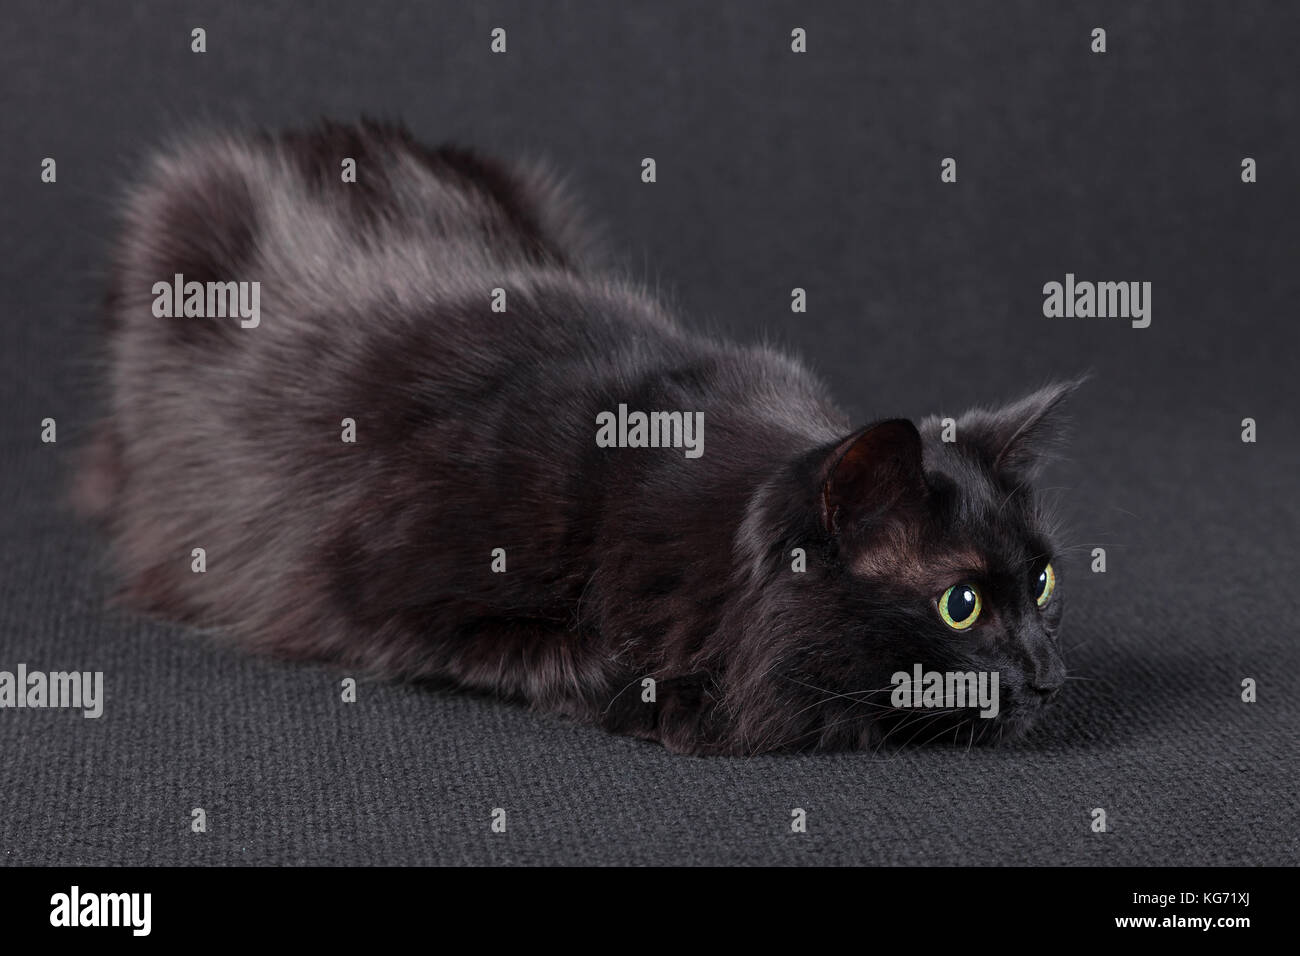 Playful chat noir sur un fond sombre, couchée dans une position de chasse et la préparation d'un saut à l'attaque. Les cheveux longs / race Angora turc s'en proie Banque D'Images